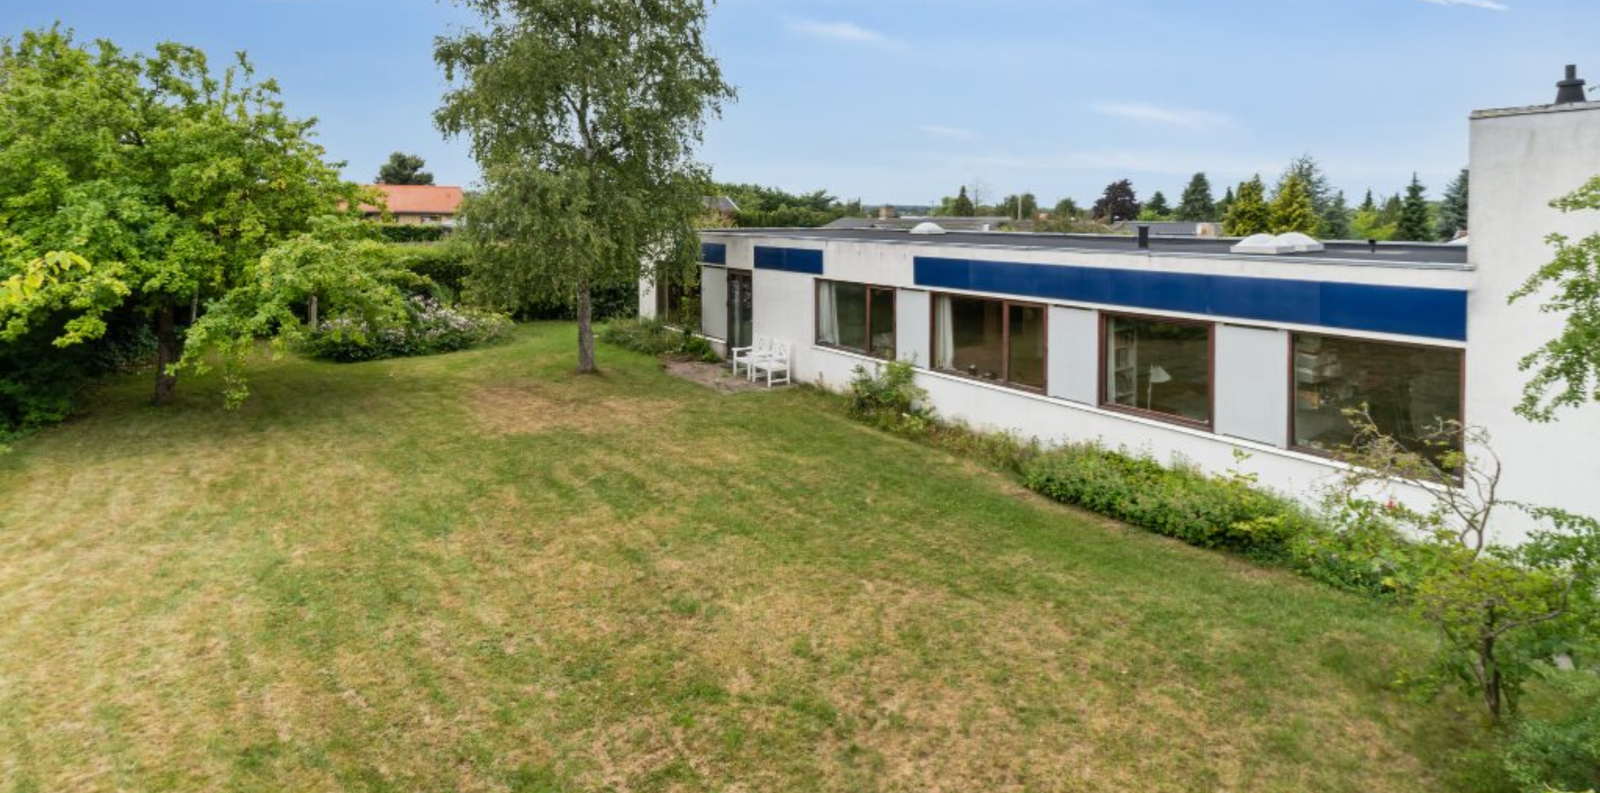 Hus/villa i Hørsholm 2970 på 160 kvm